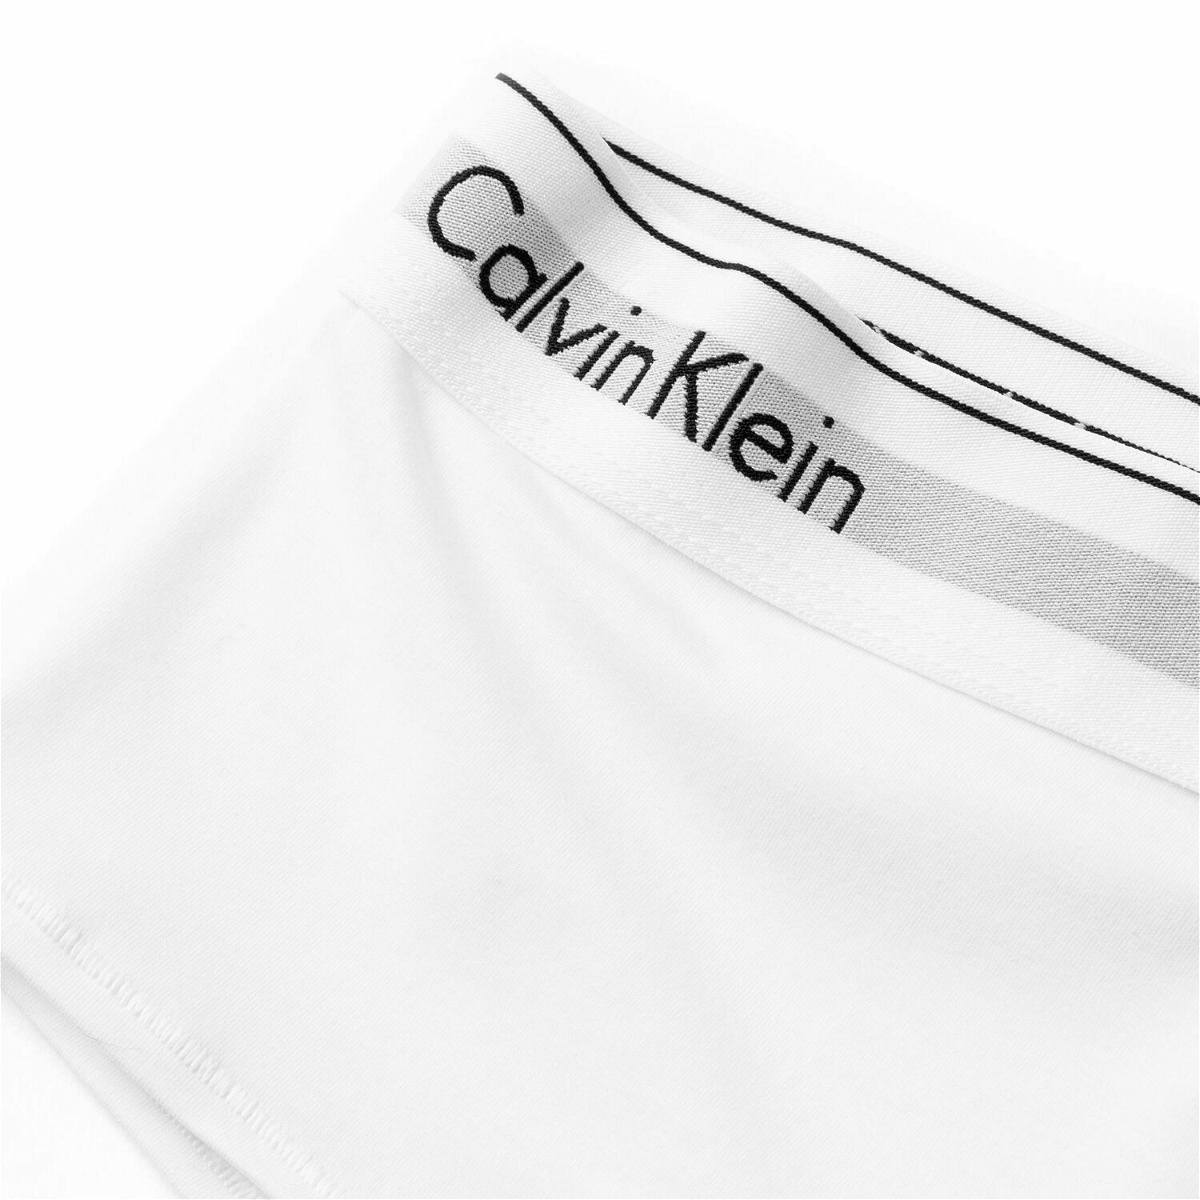 Calvin Klein Underwear WMNS 5 PACK HIPSTER Multi